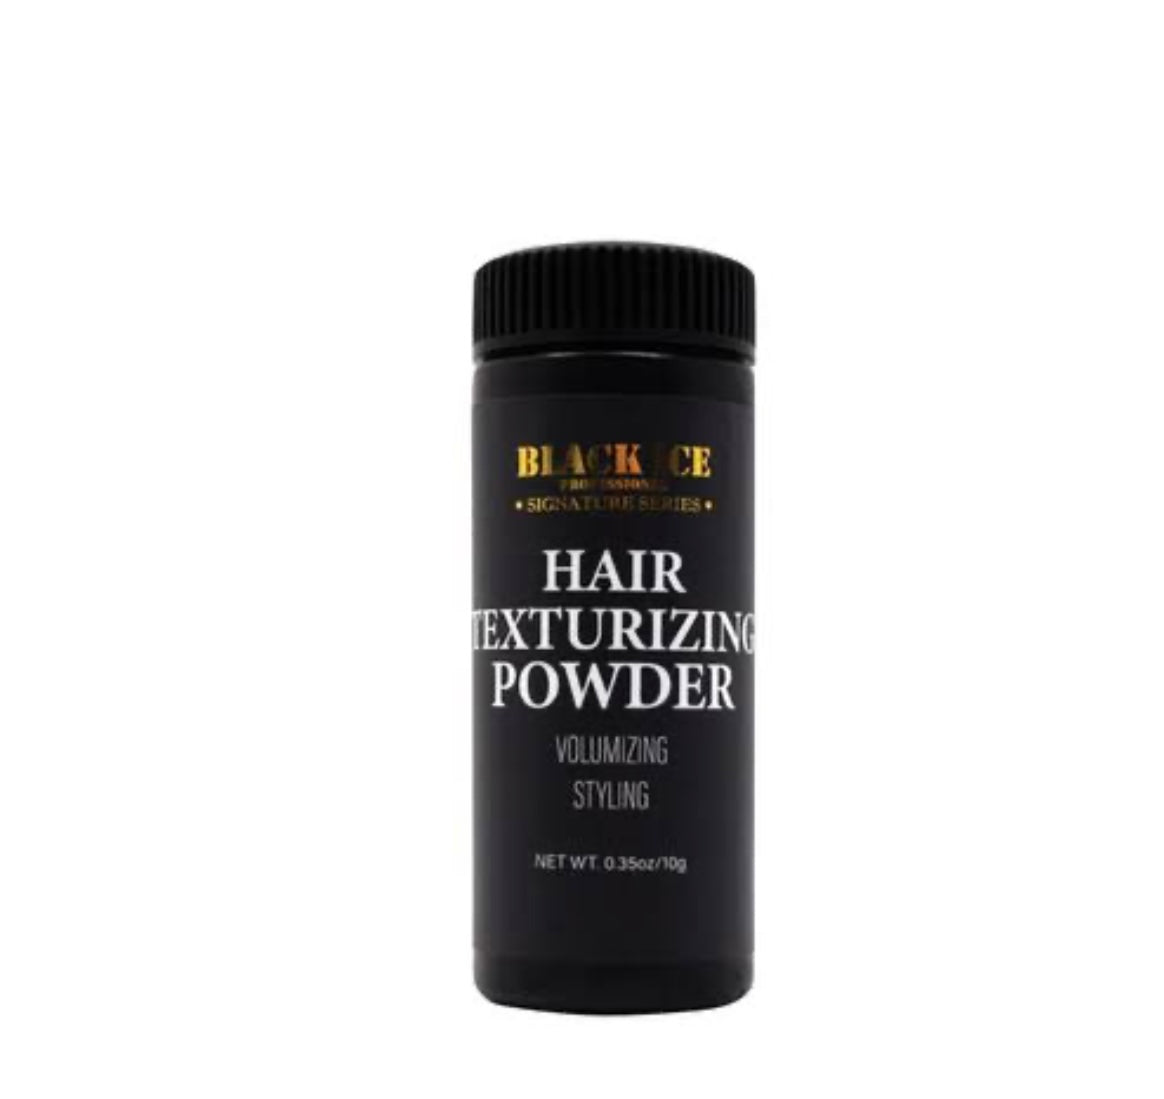 Hair texture powder